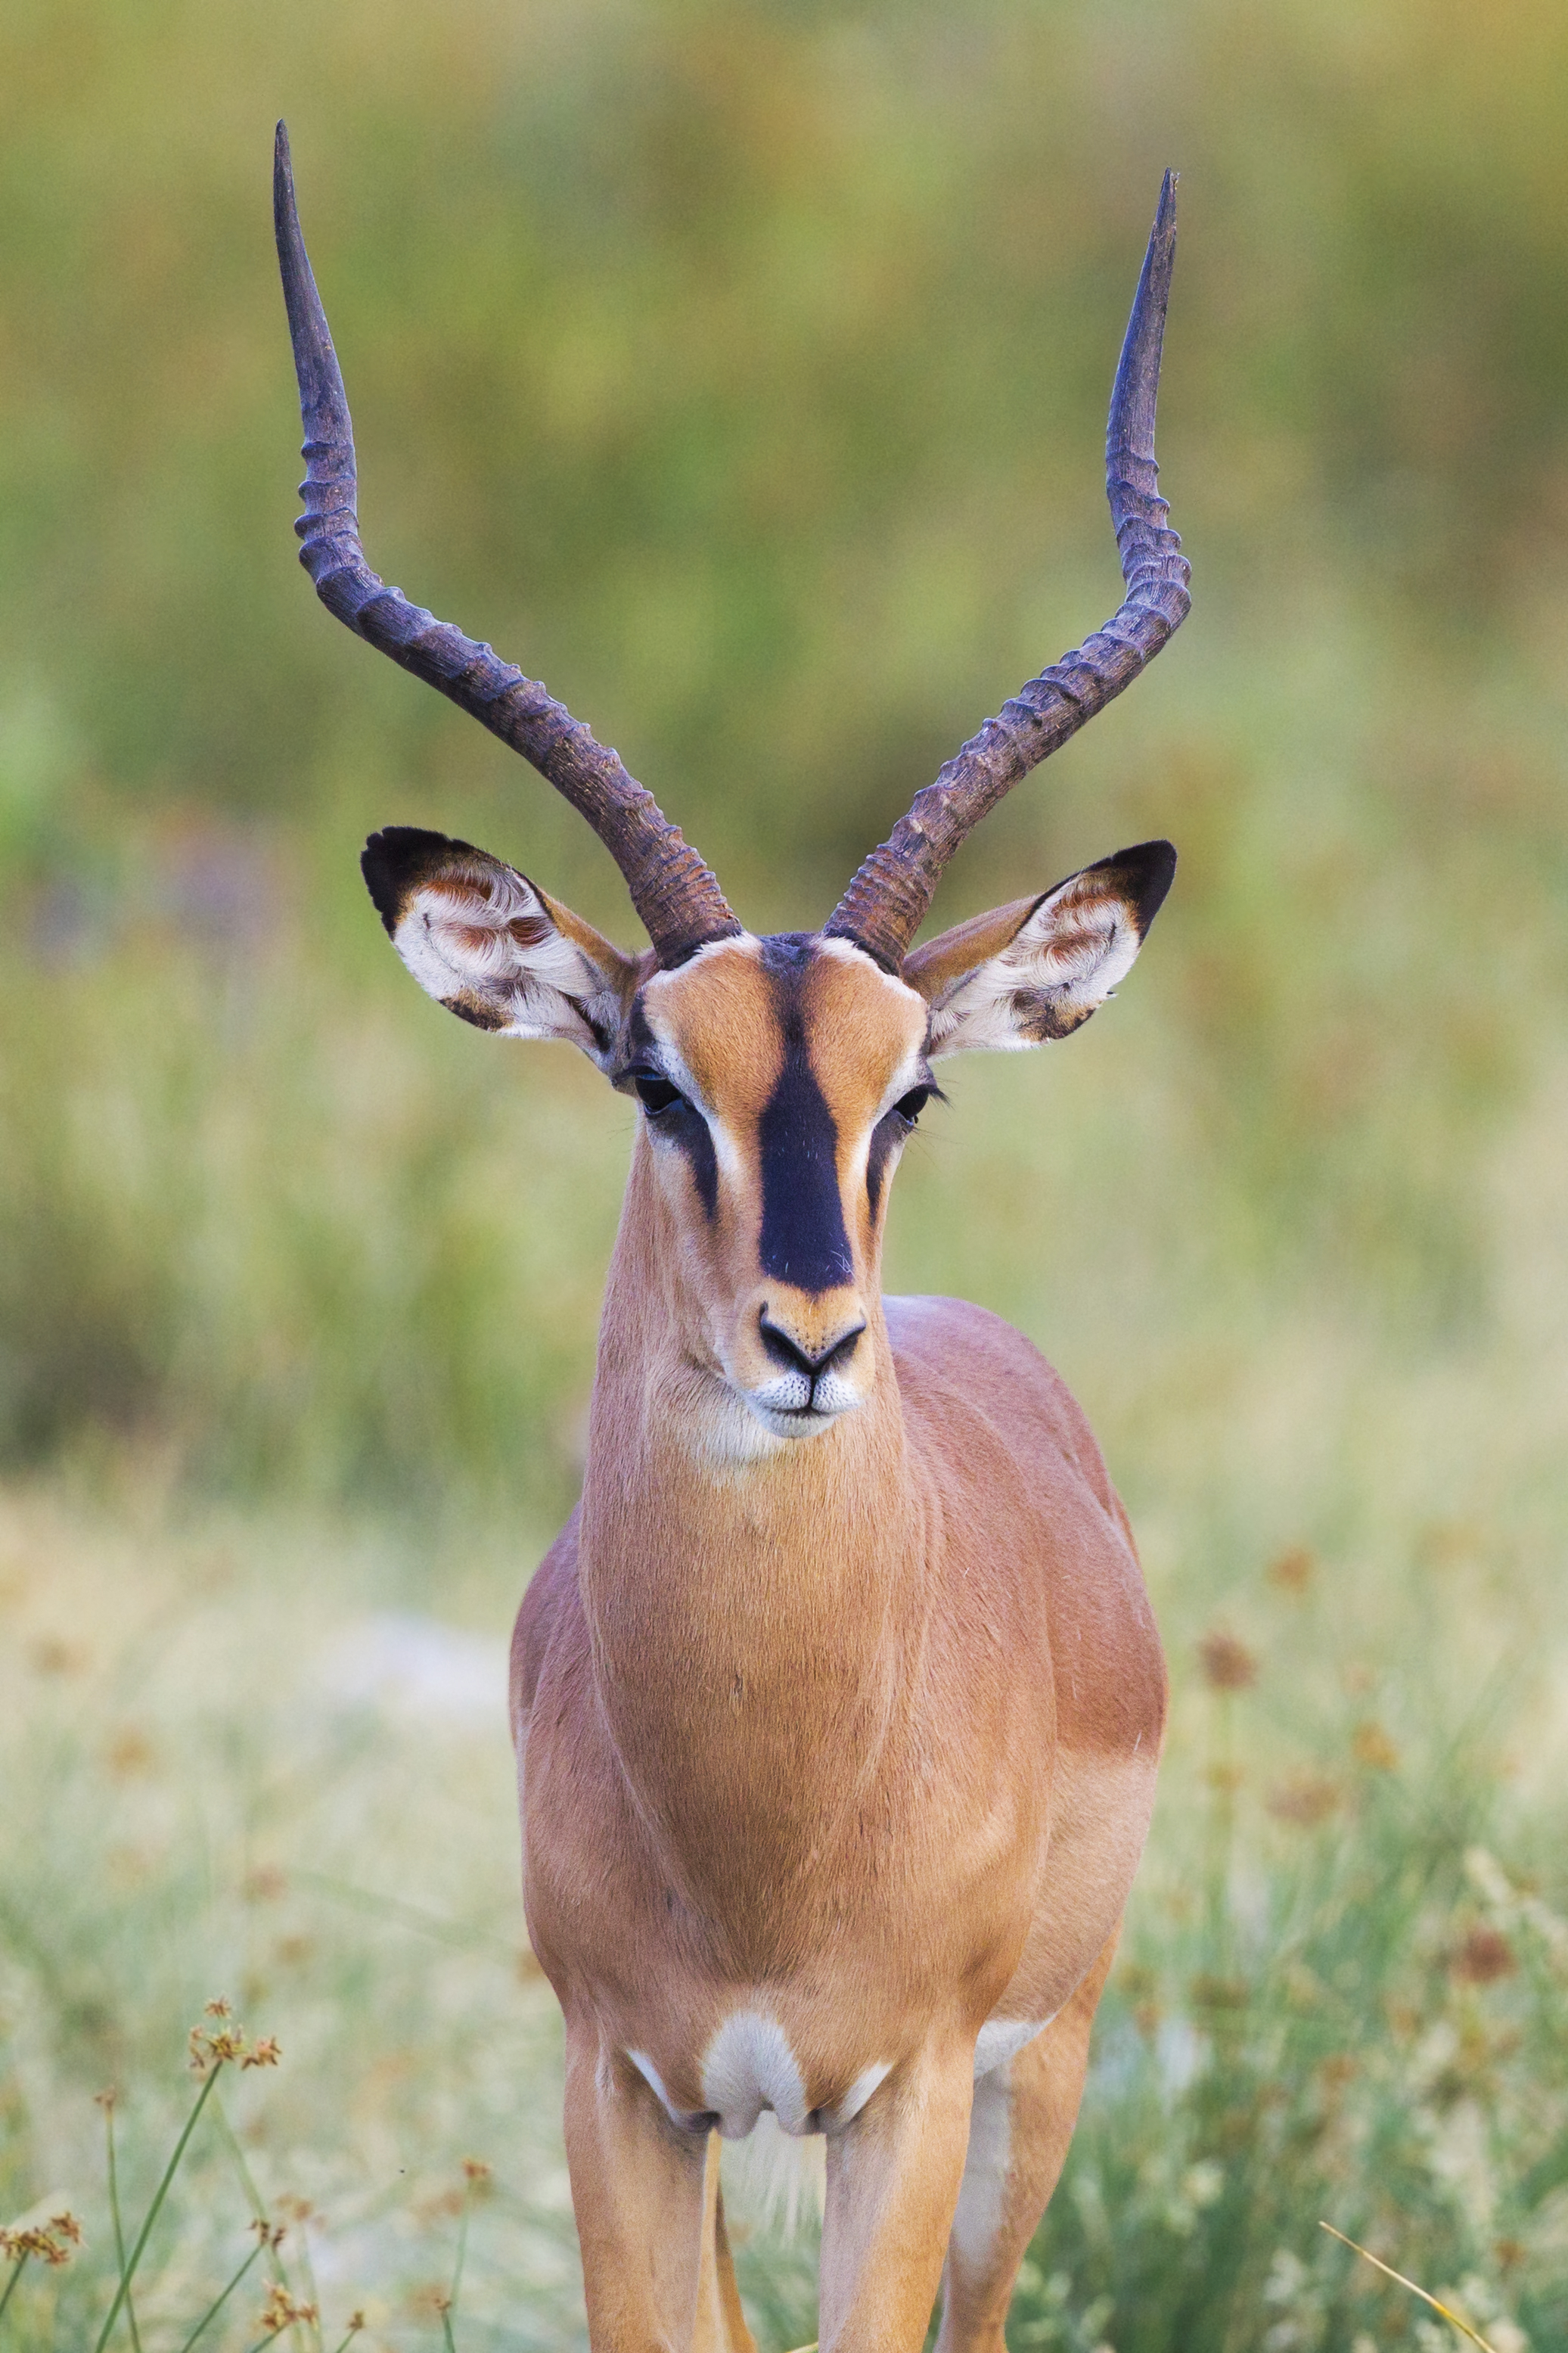 Black-faced impala from Etosha National Park, Namibia, 2014